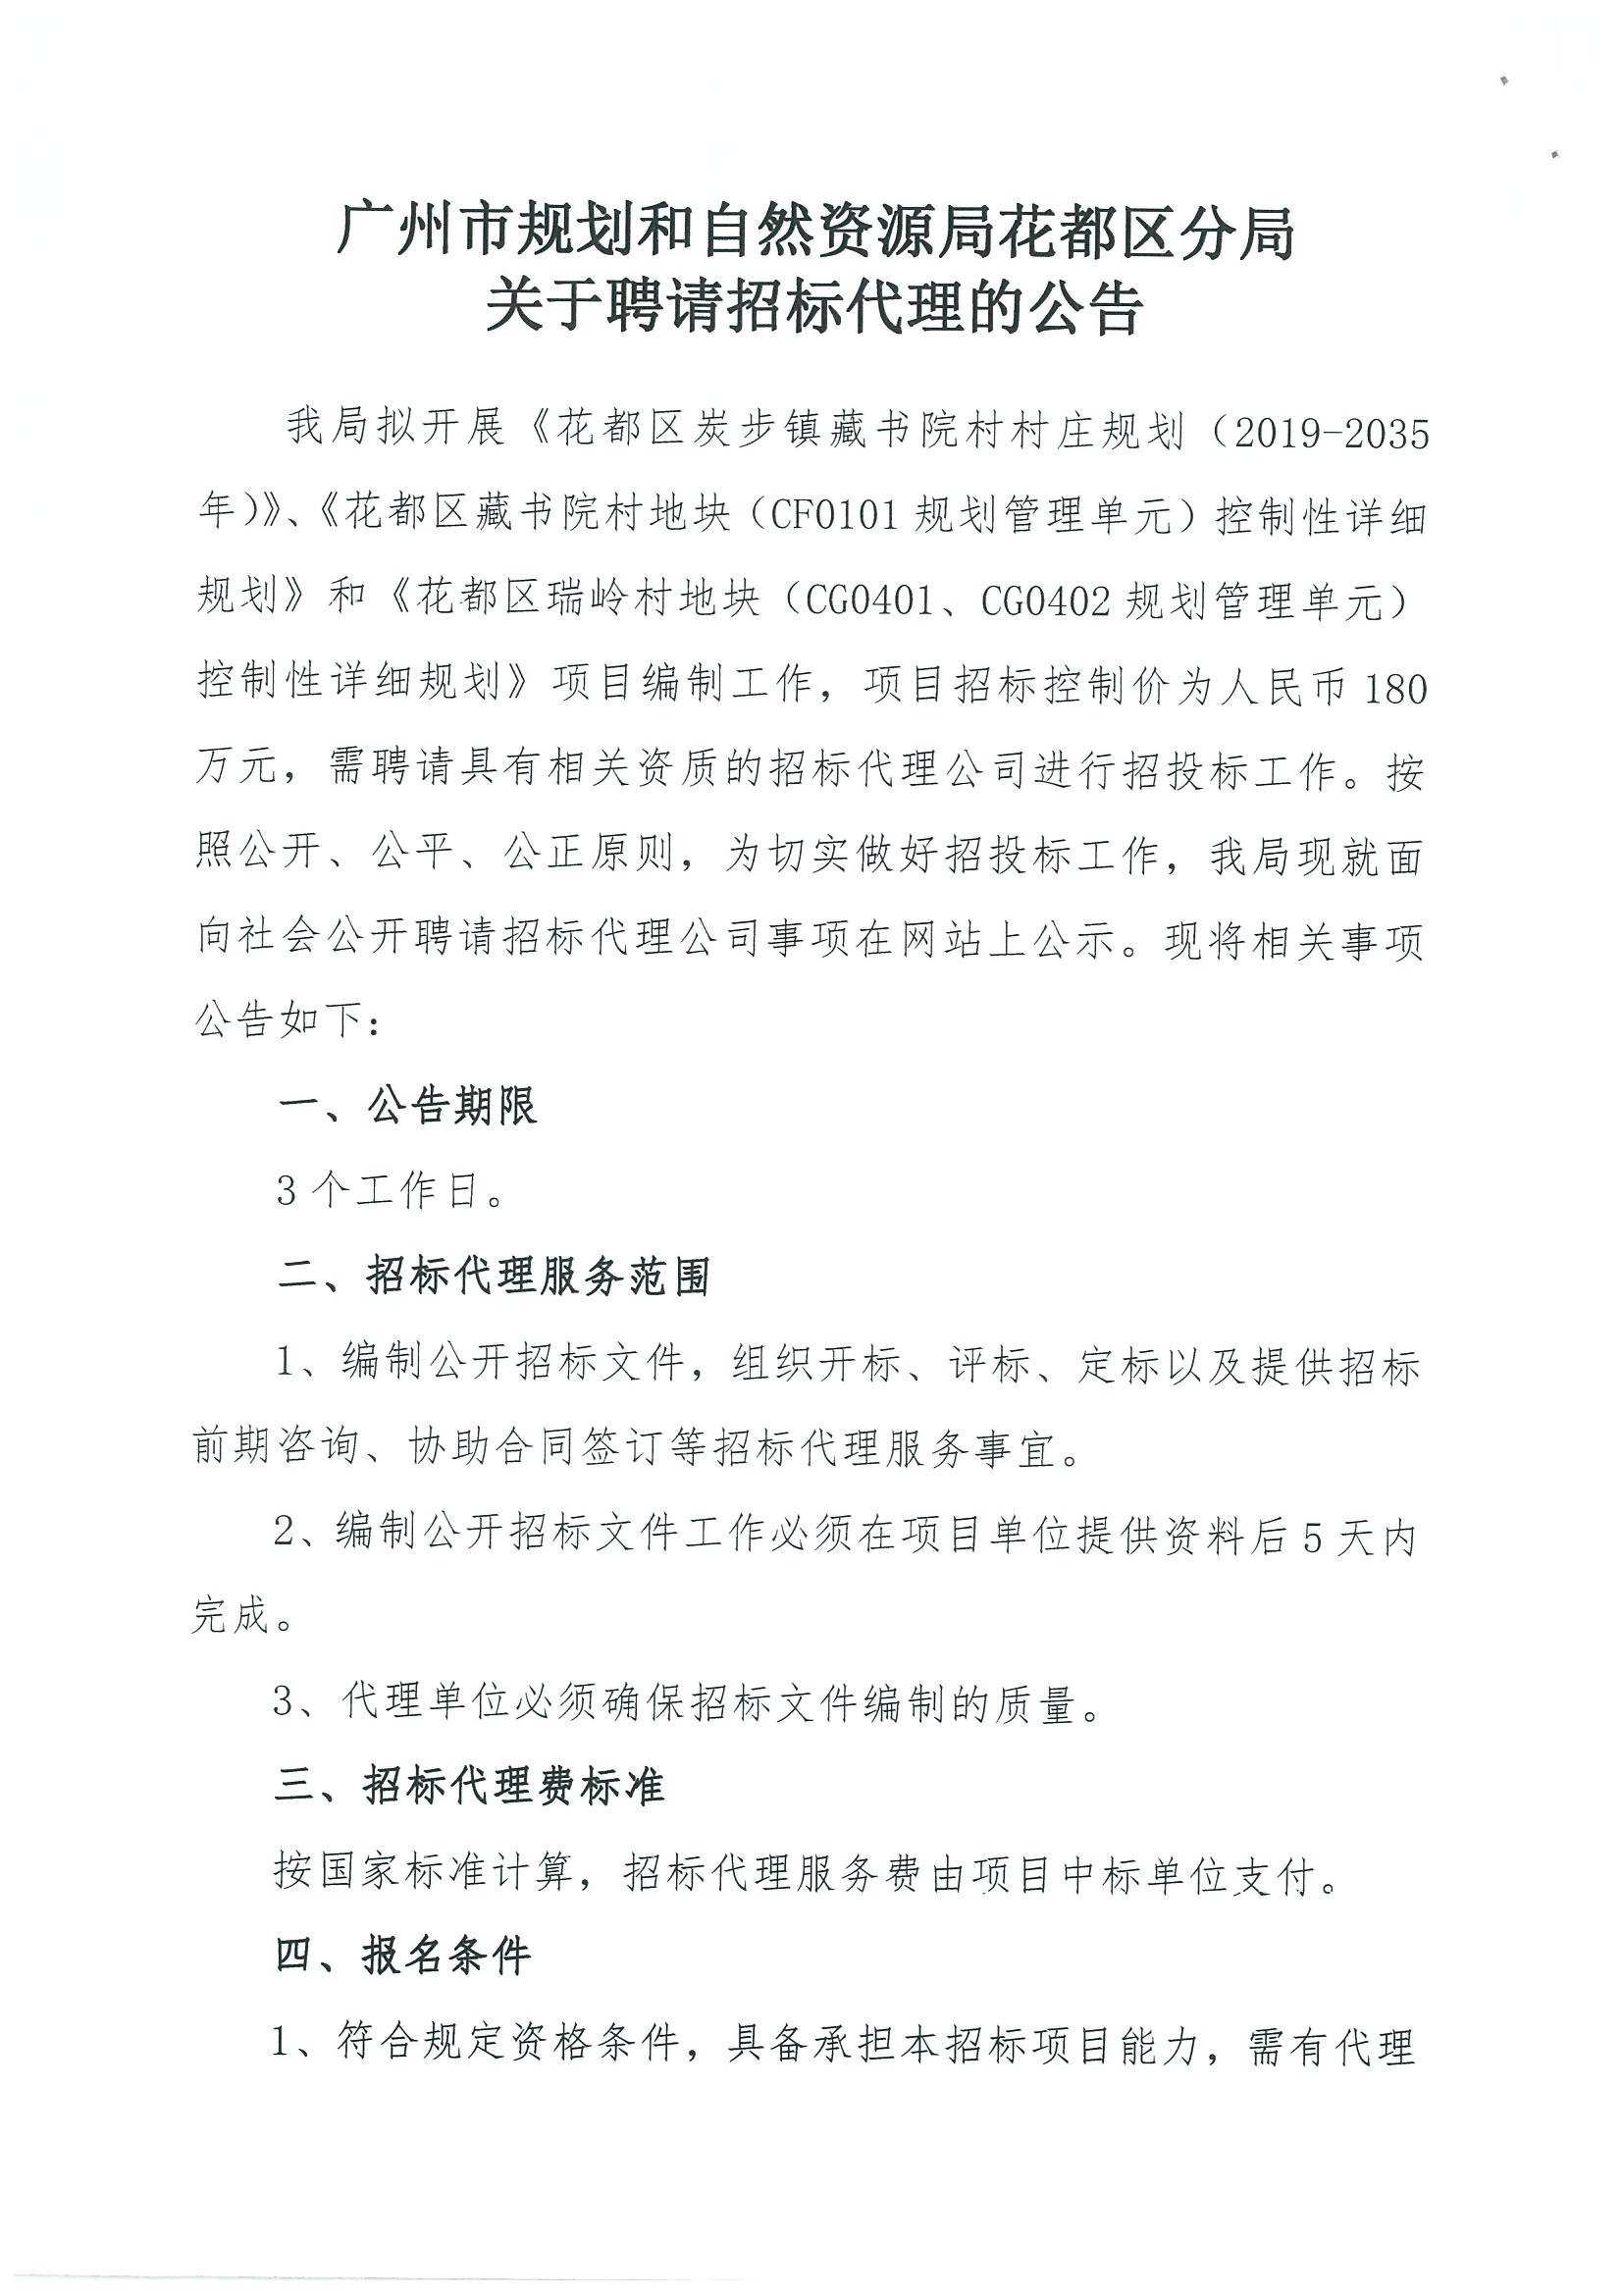 广州市规划和自然资源局花都区分局关于聘请招标代理的公告_页面_1.jpg